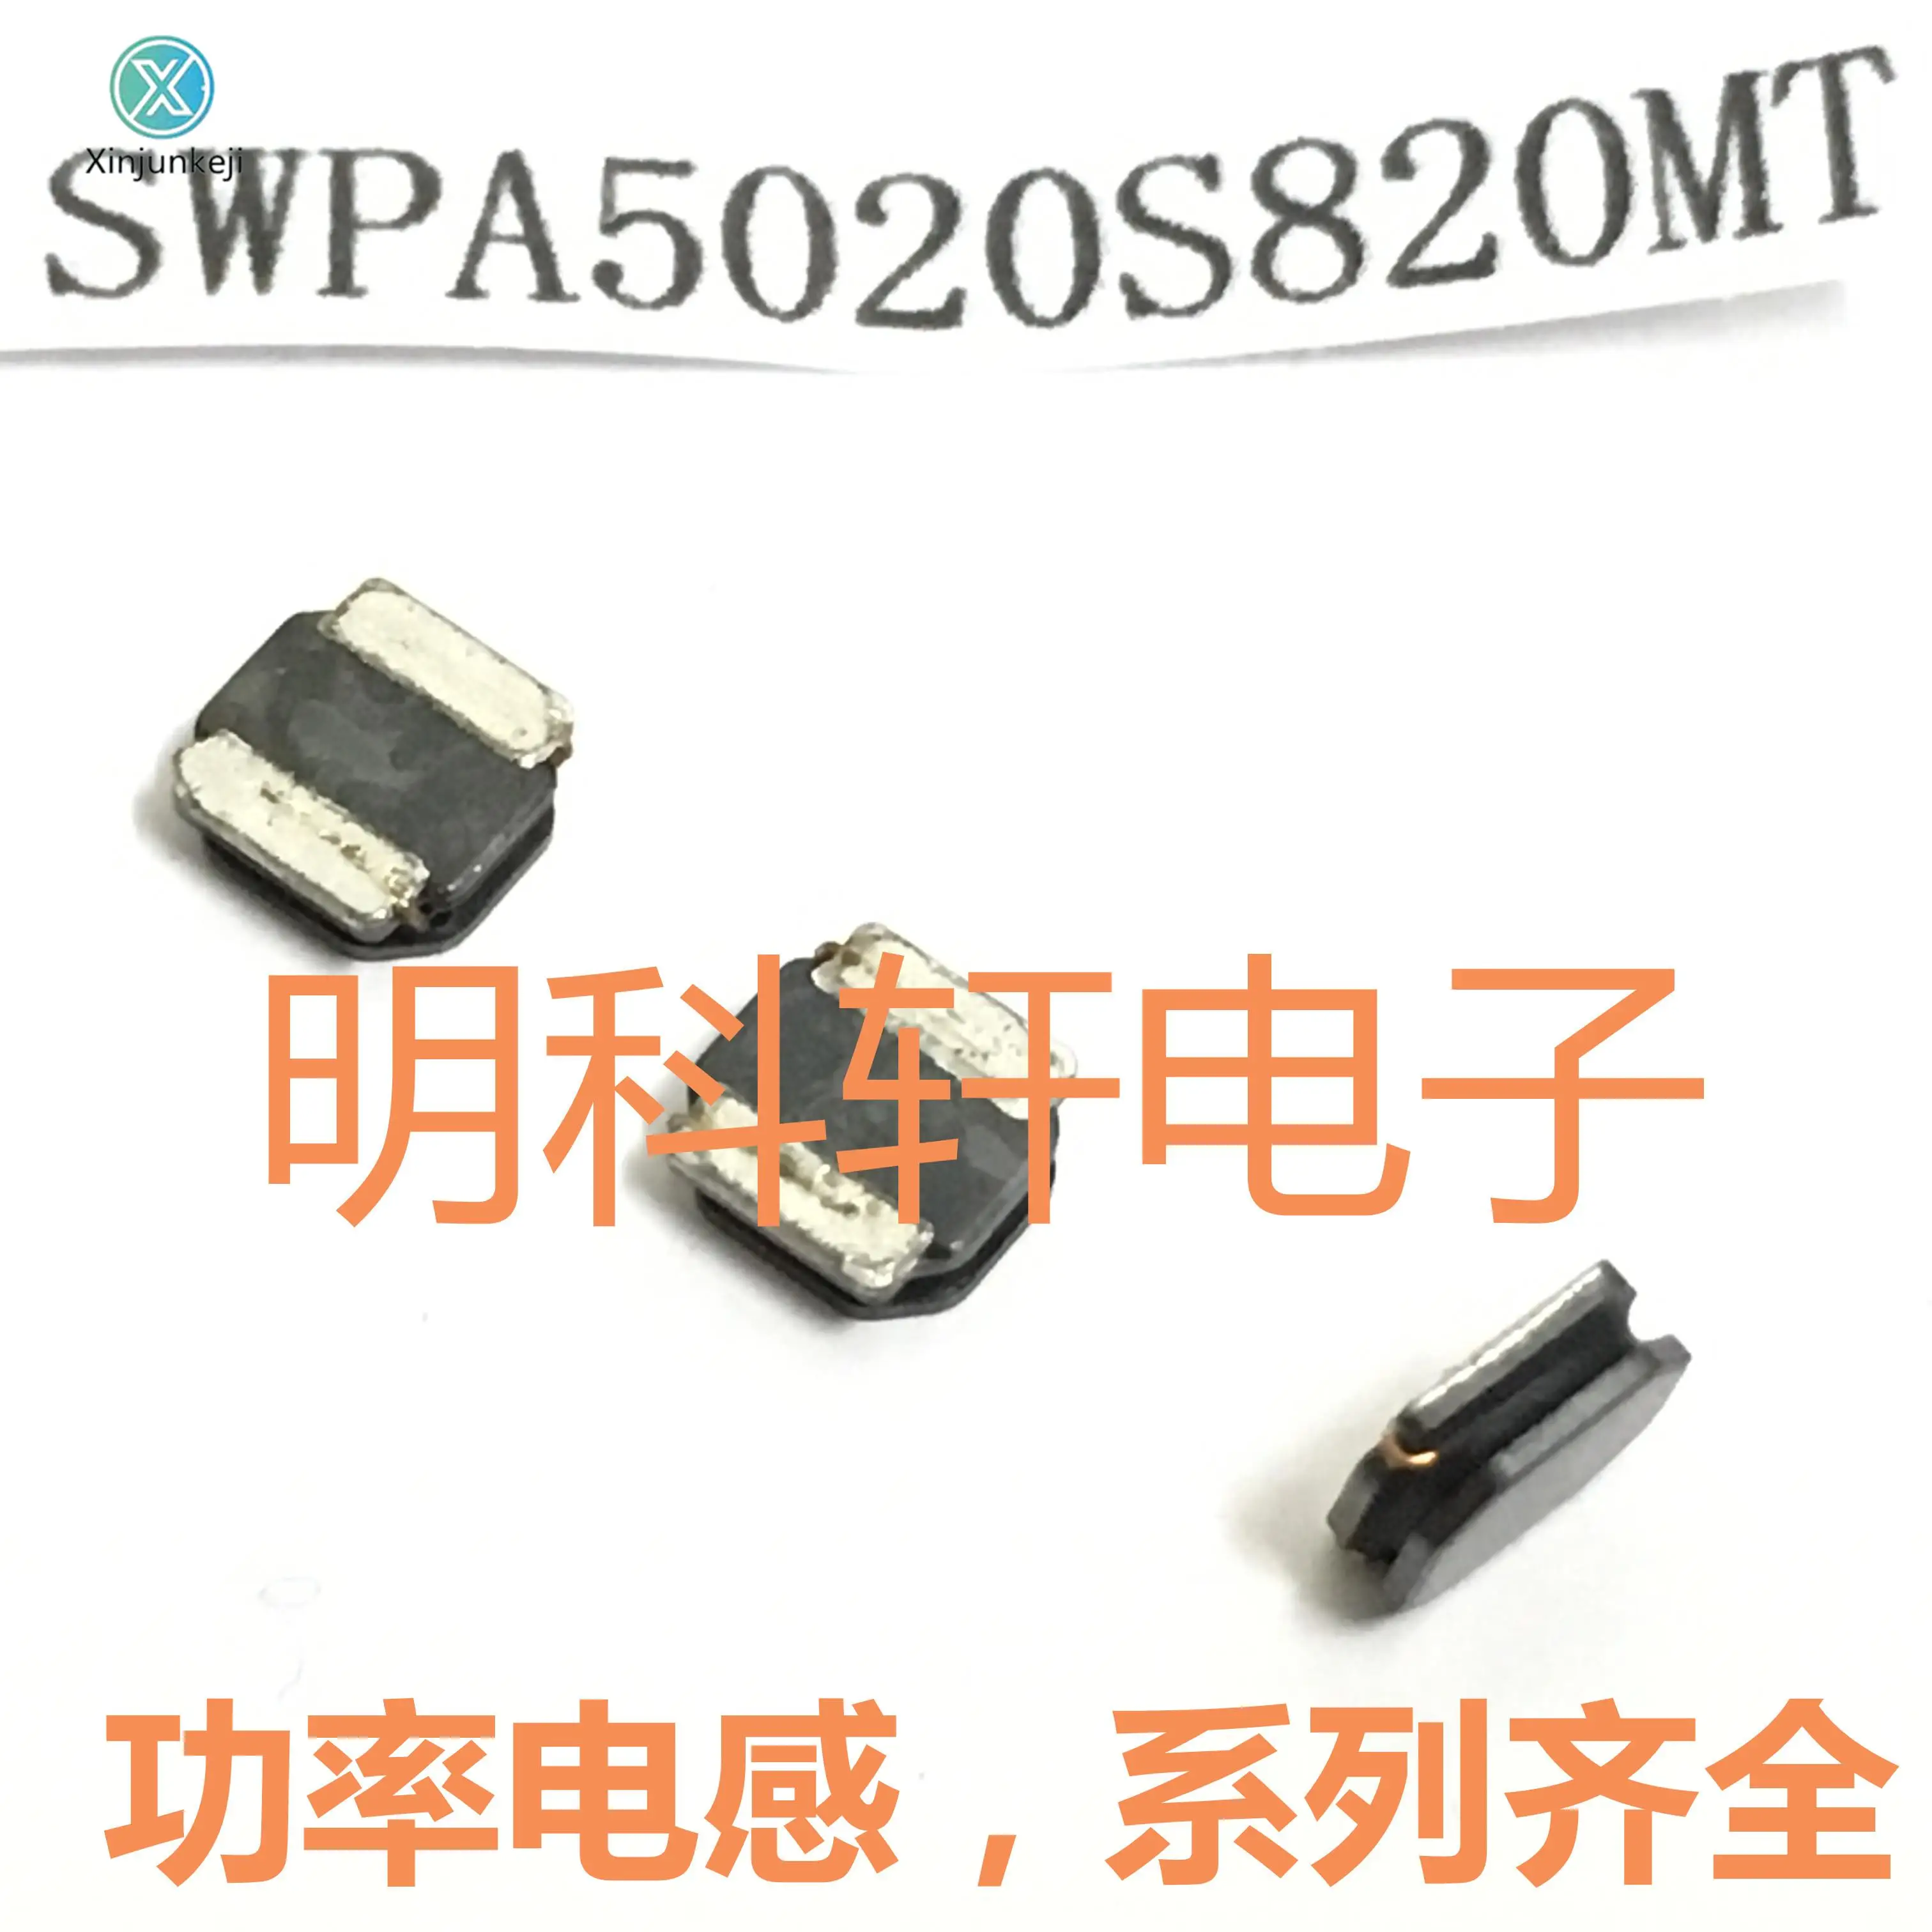 

30 шт Оригинальный Новый SWPA5020S820MT SMD силовой индуктор 82UH 5,0*5,0*2,0